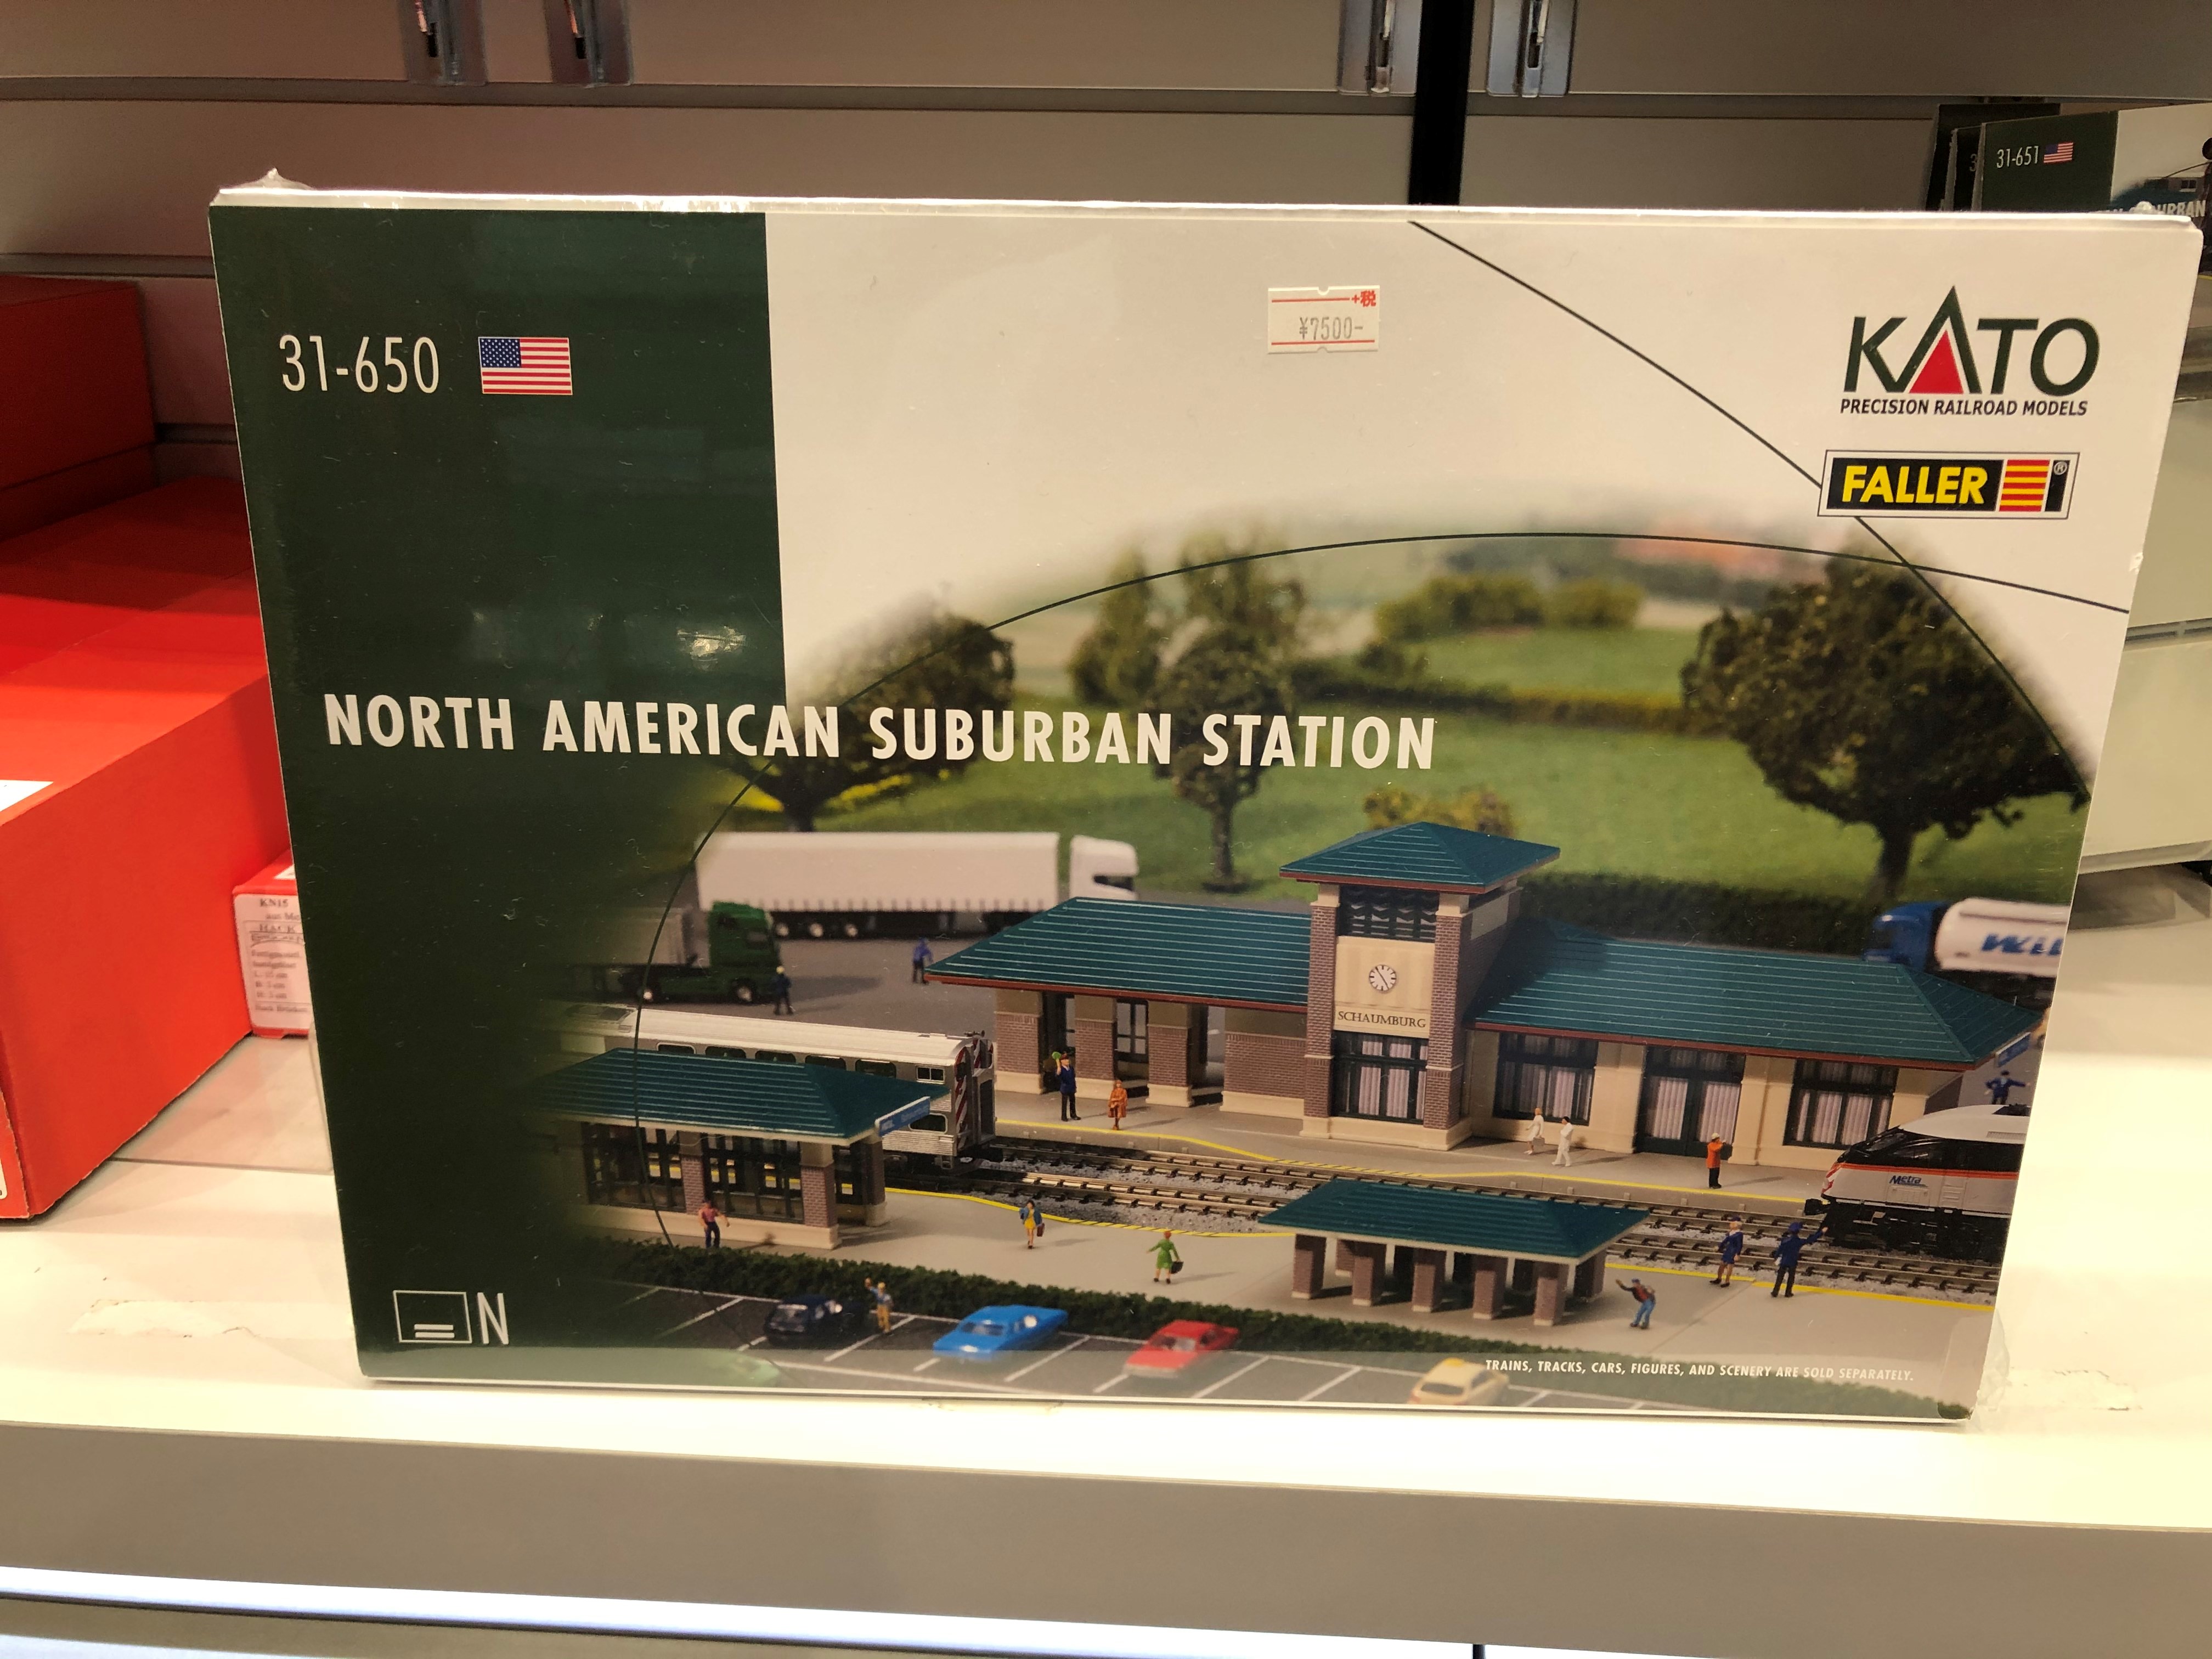 ホビーセンターカトー東京 Kato Faller Katoとfallerのコラボ商品として アメリカの駅 もございます Katoの米国法人 Kato Usa が所在するイリノイ州シャンバーグの駅をモデルとしたキットです 説明書は英語ですが イラストや写真中心なので簡単に